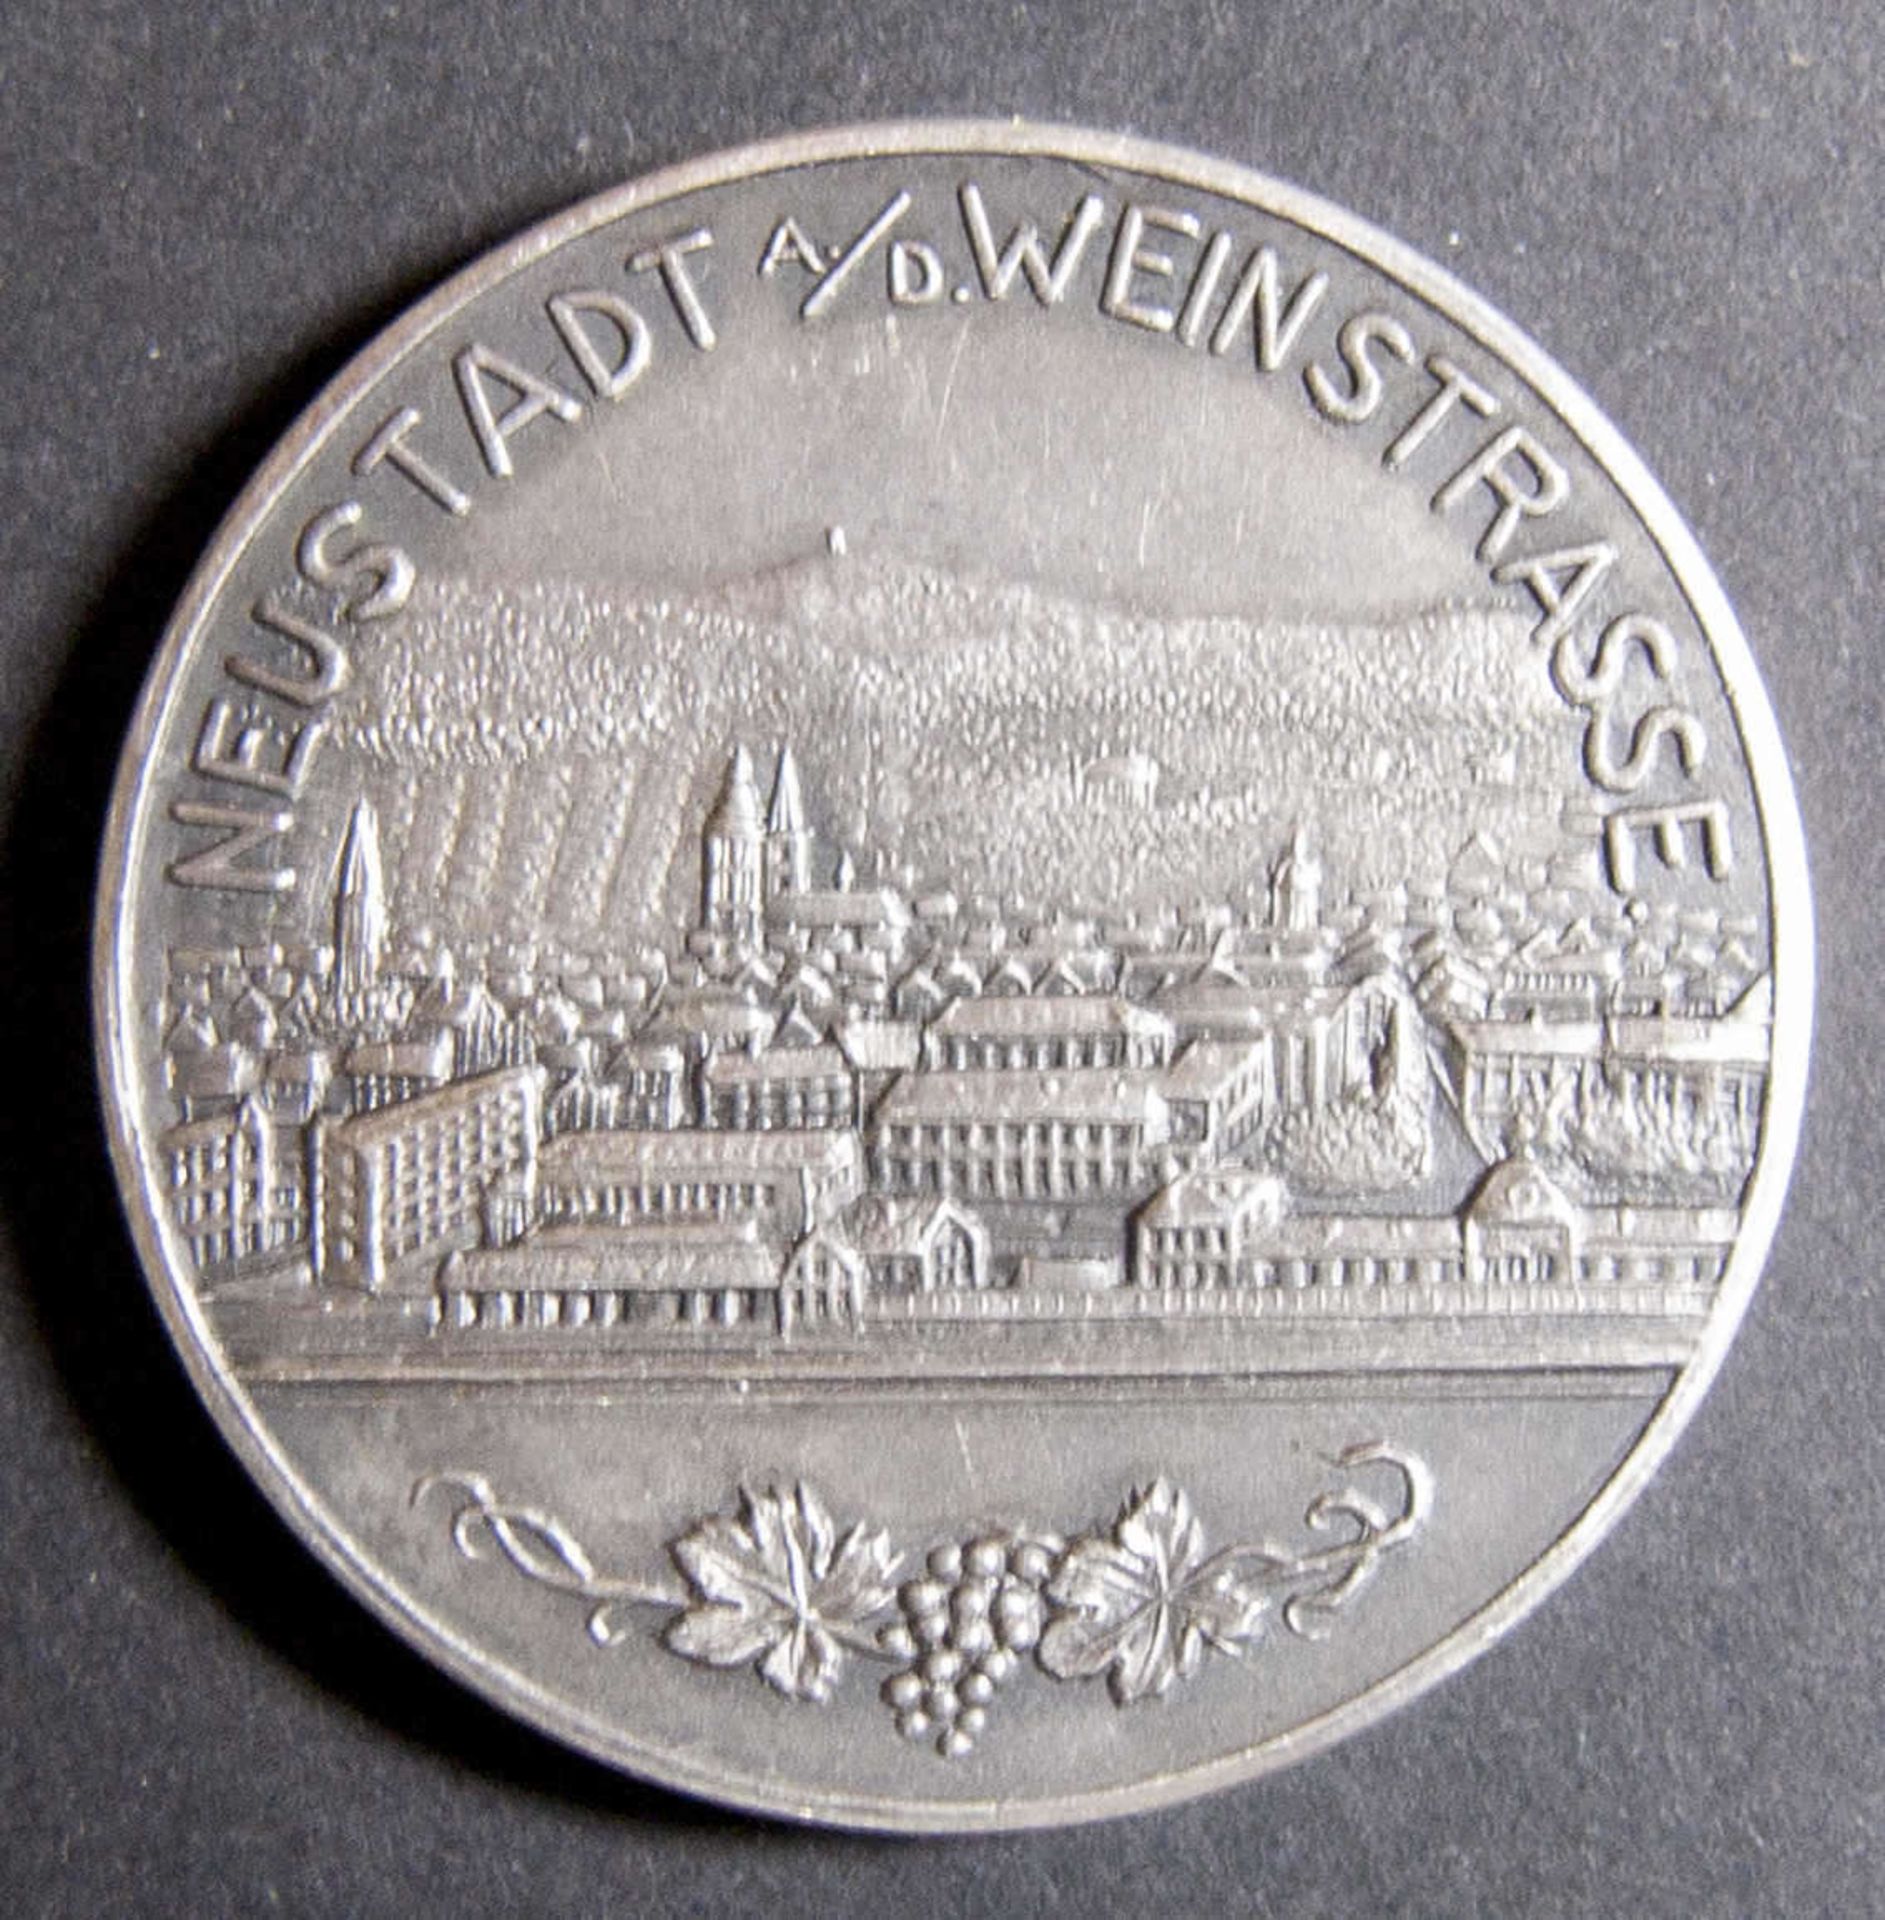 Medaille 1. Saarpfälzisches Gauschützenfest 16. - 23. August 1936. Olympiaringe über Eichenlaub - - Bild 2 aus 2